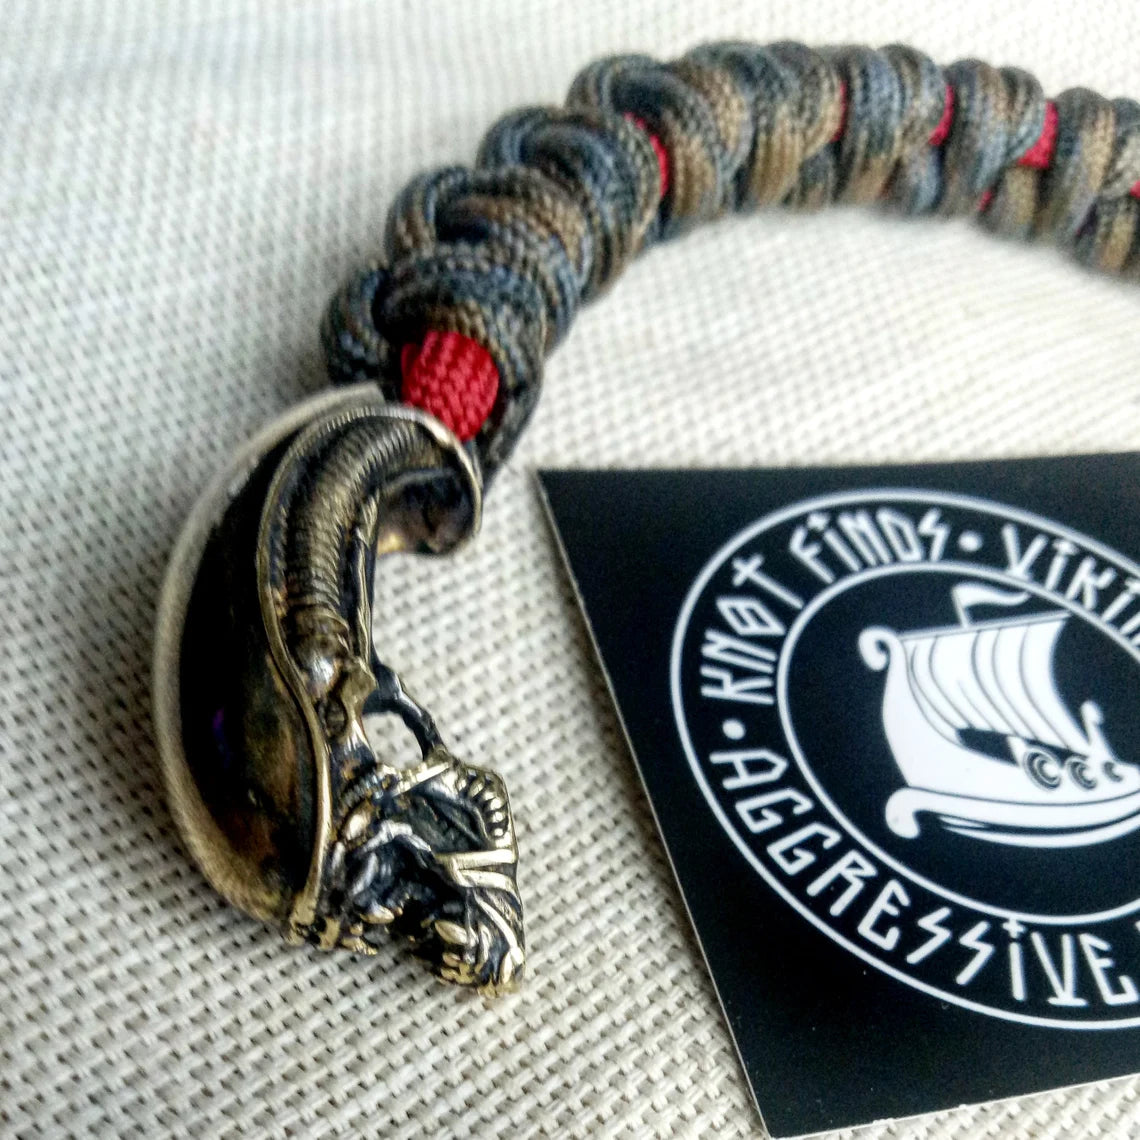 Paracord bracelet "ALIEN". Celtic knot and parachute cord.